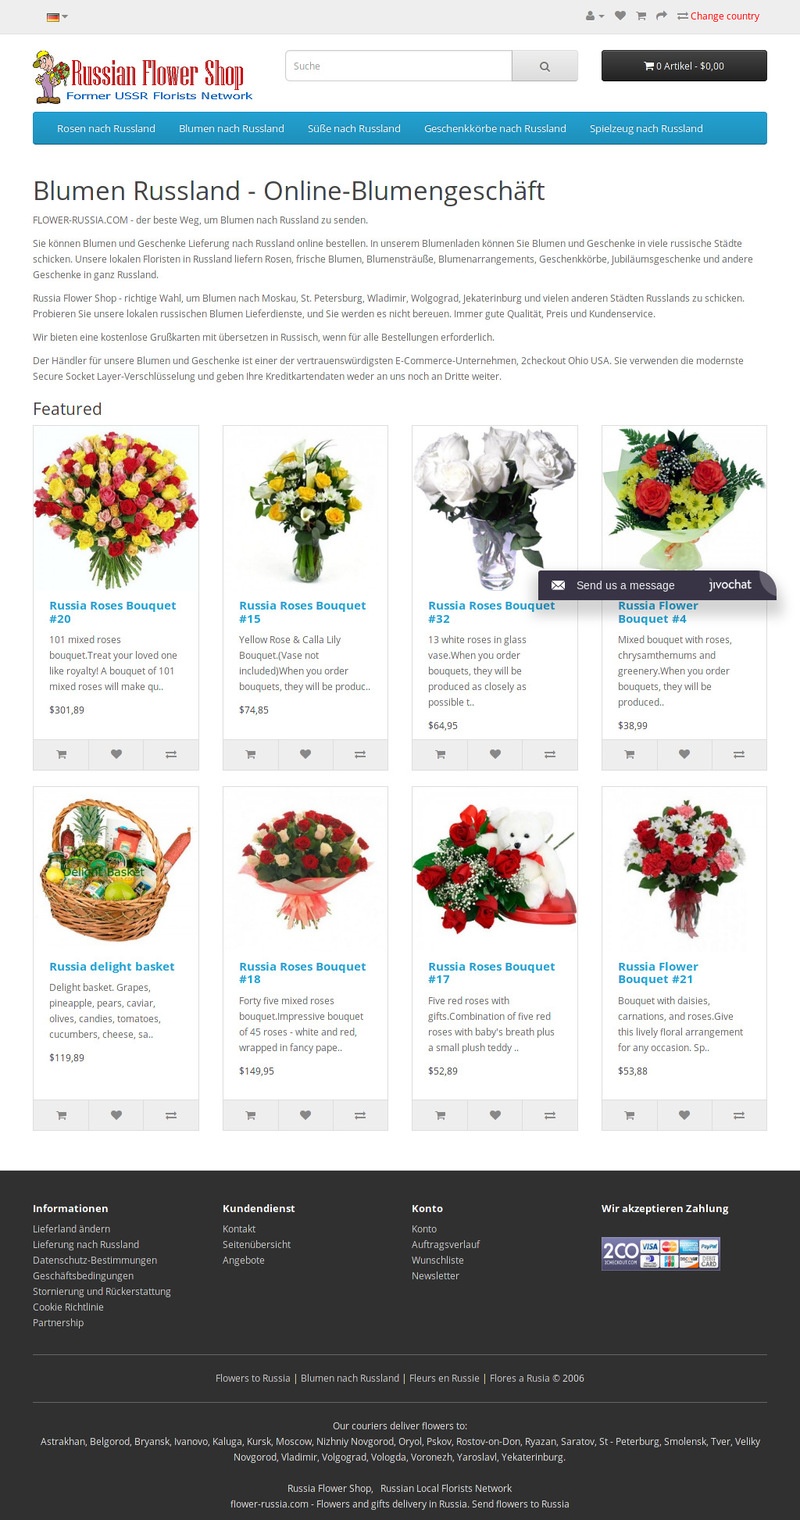 Details : Senden Sie Blumen nach Moldawien. Blumenlieferung in Moldawien.